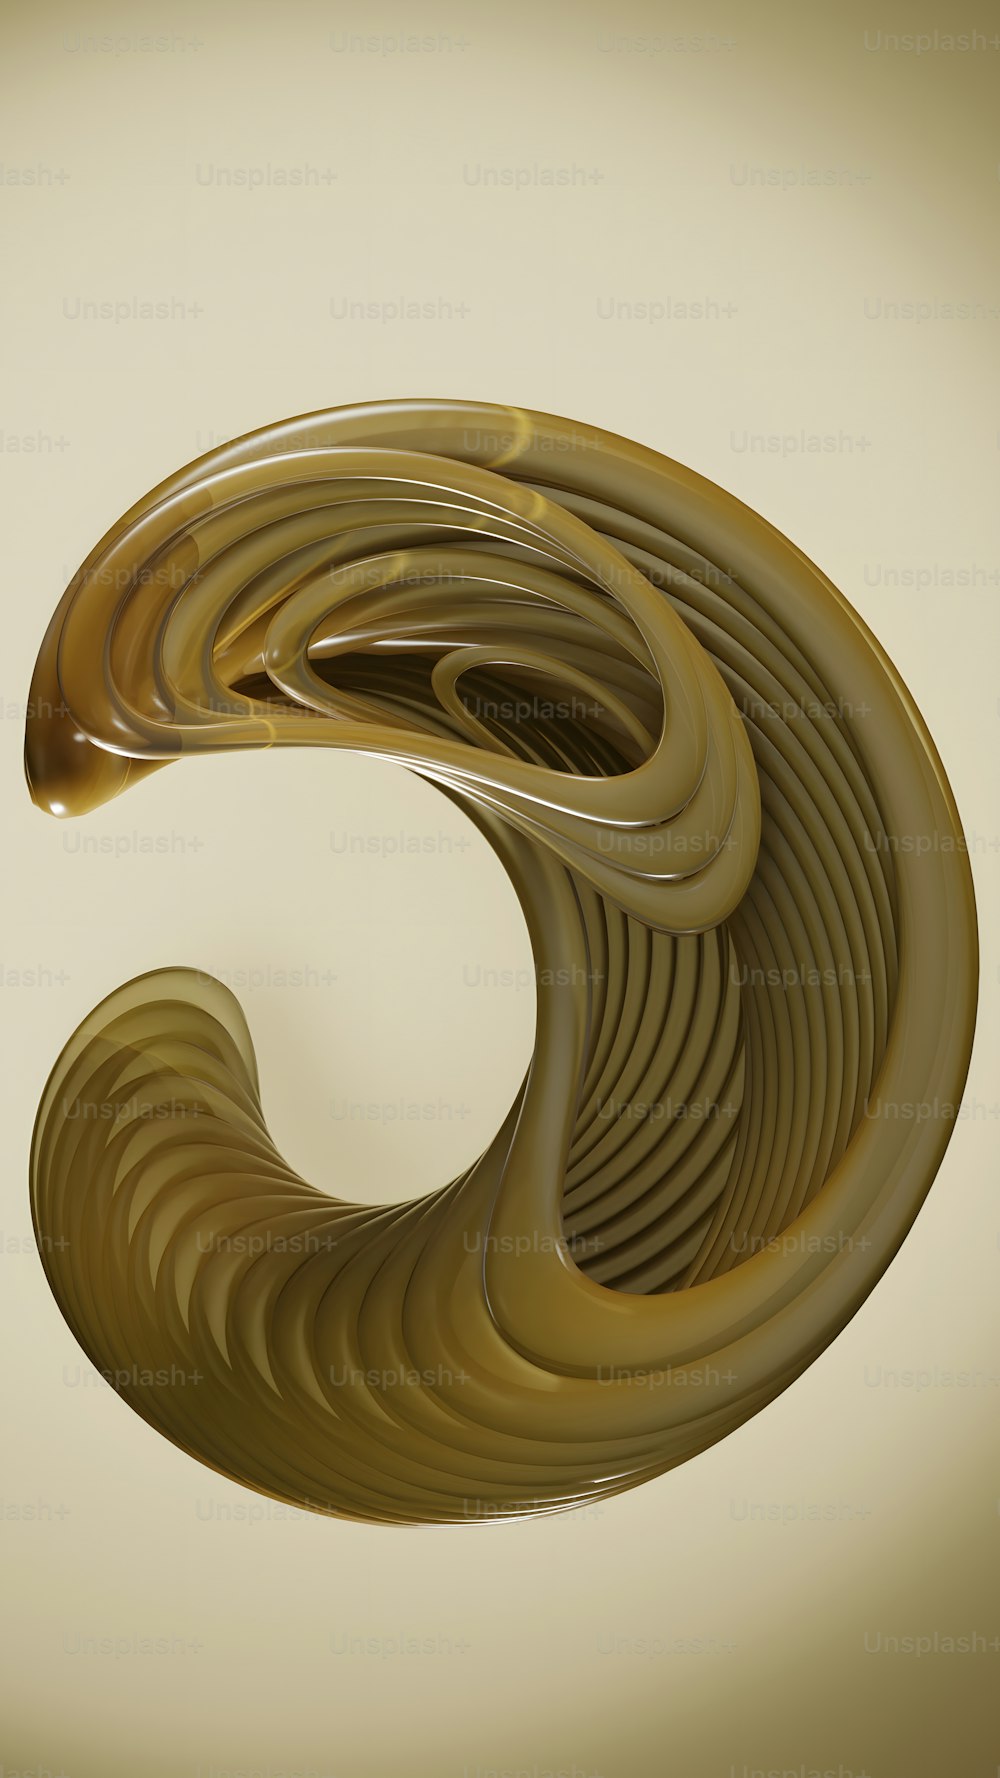 uma imagem gerada por computador de um objeto semelhante a uma espiral